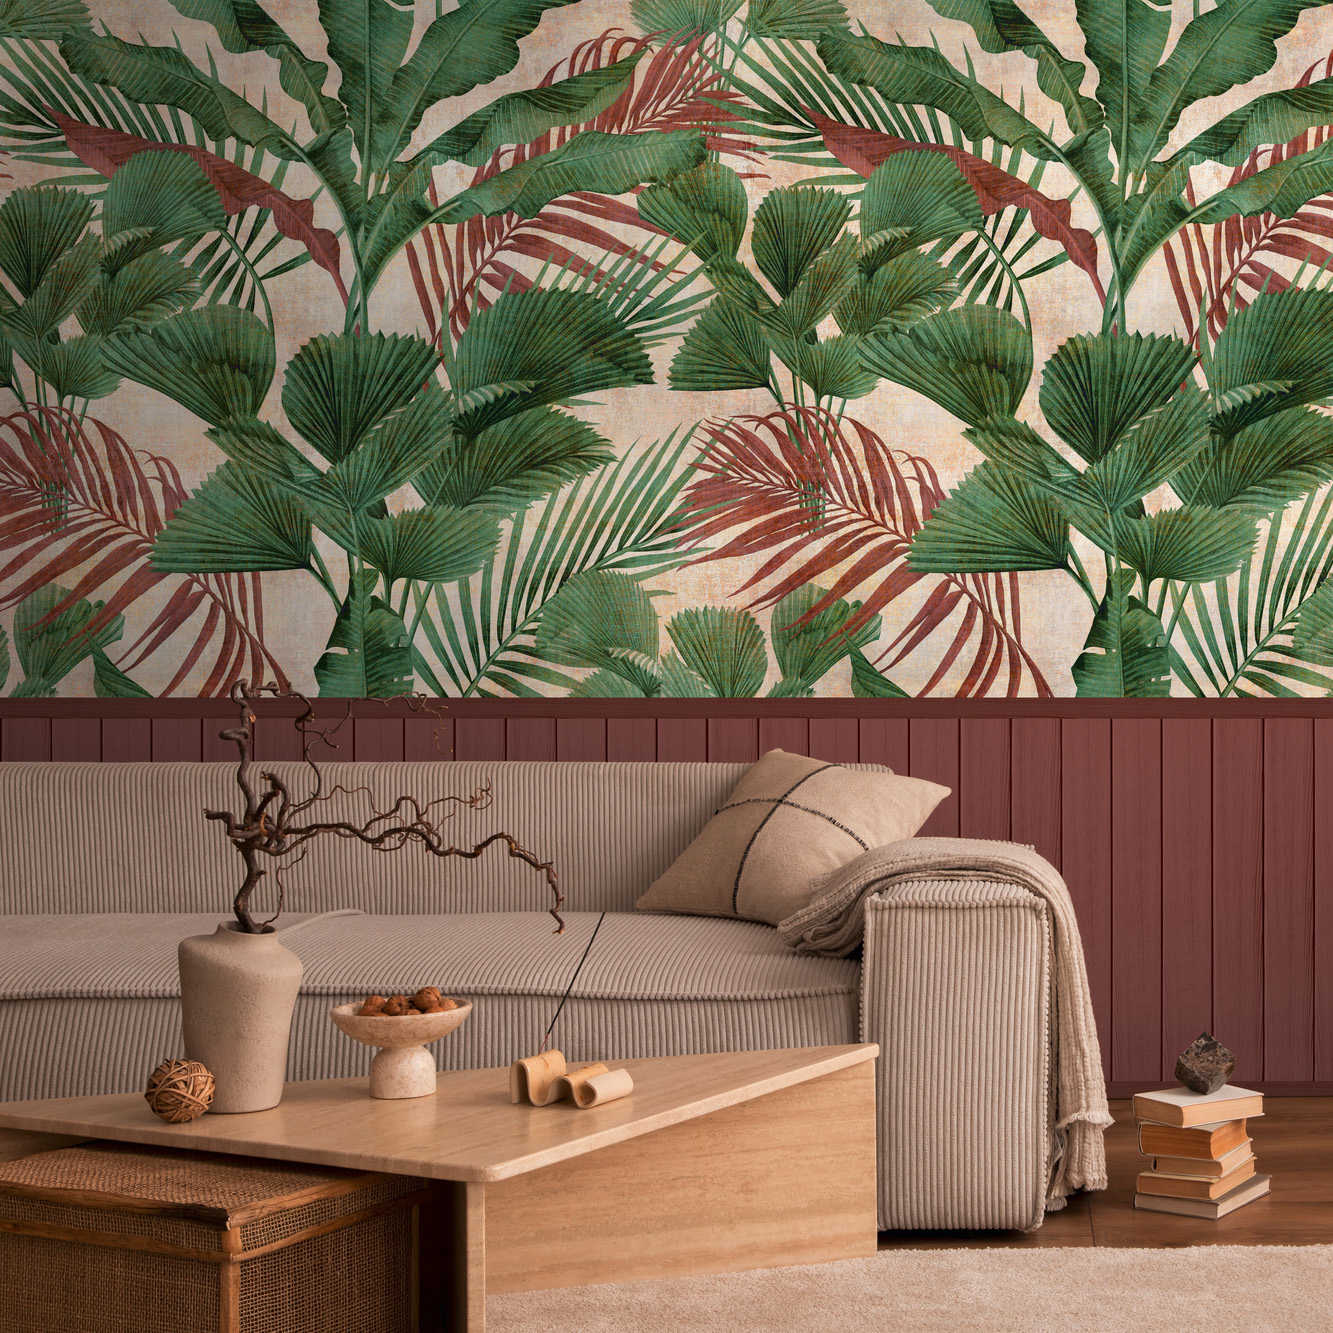 Onderlaag behang met vliesmotief, plintrand met houteffect en junglepatroon - rood, groen, beige
